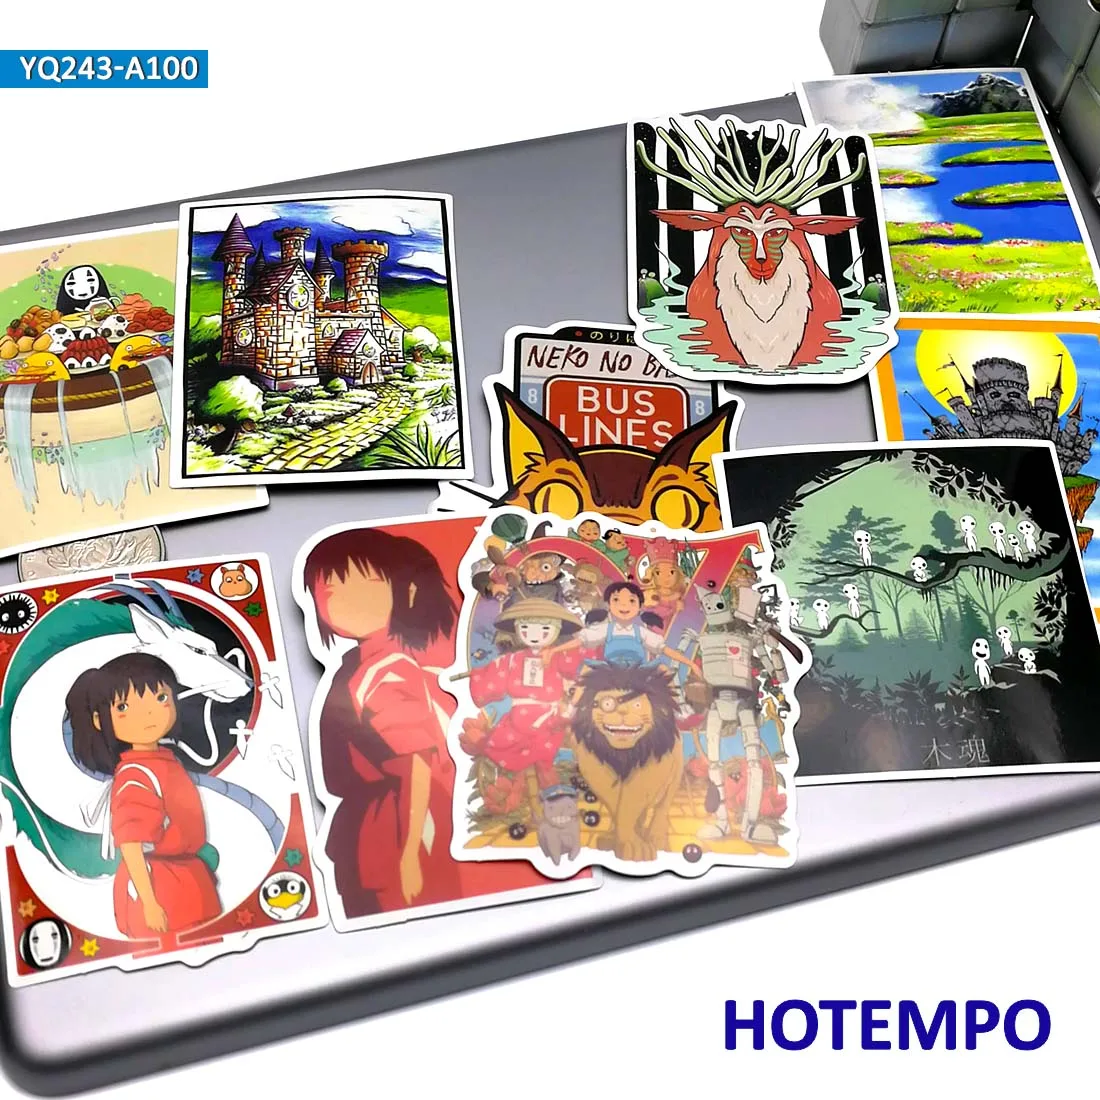 100 шт манга Хаяо Миядзаки классические аниме наклейки для мобильного телефона ноутбука чемодан гитара скейтборд художественные наклейки